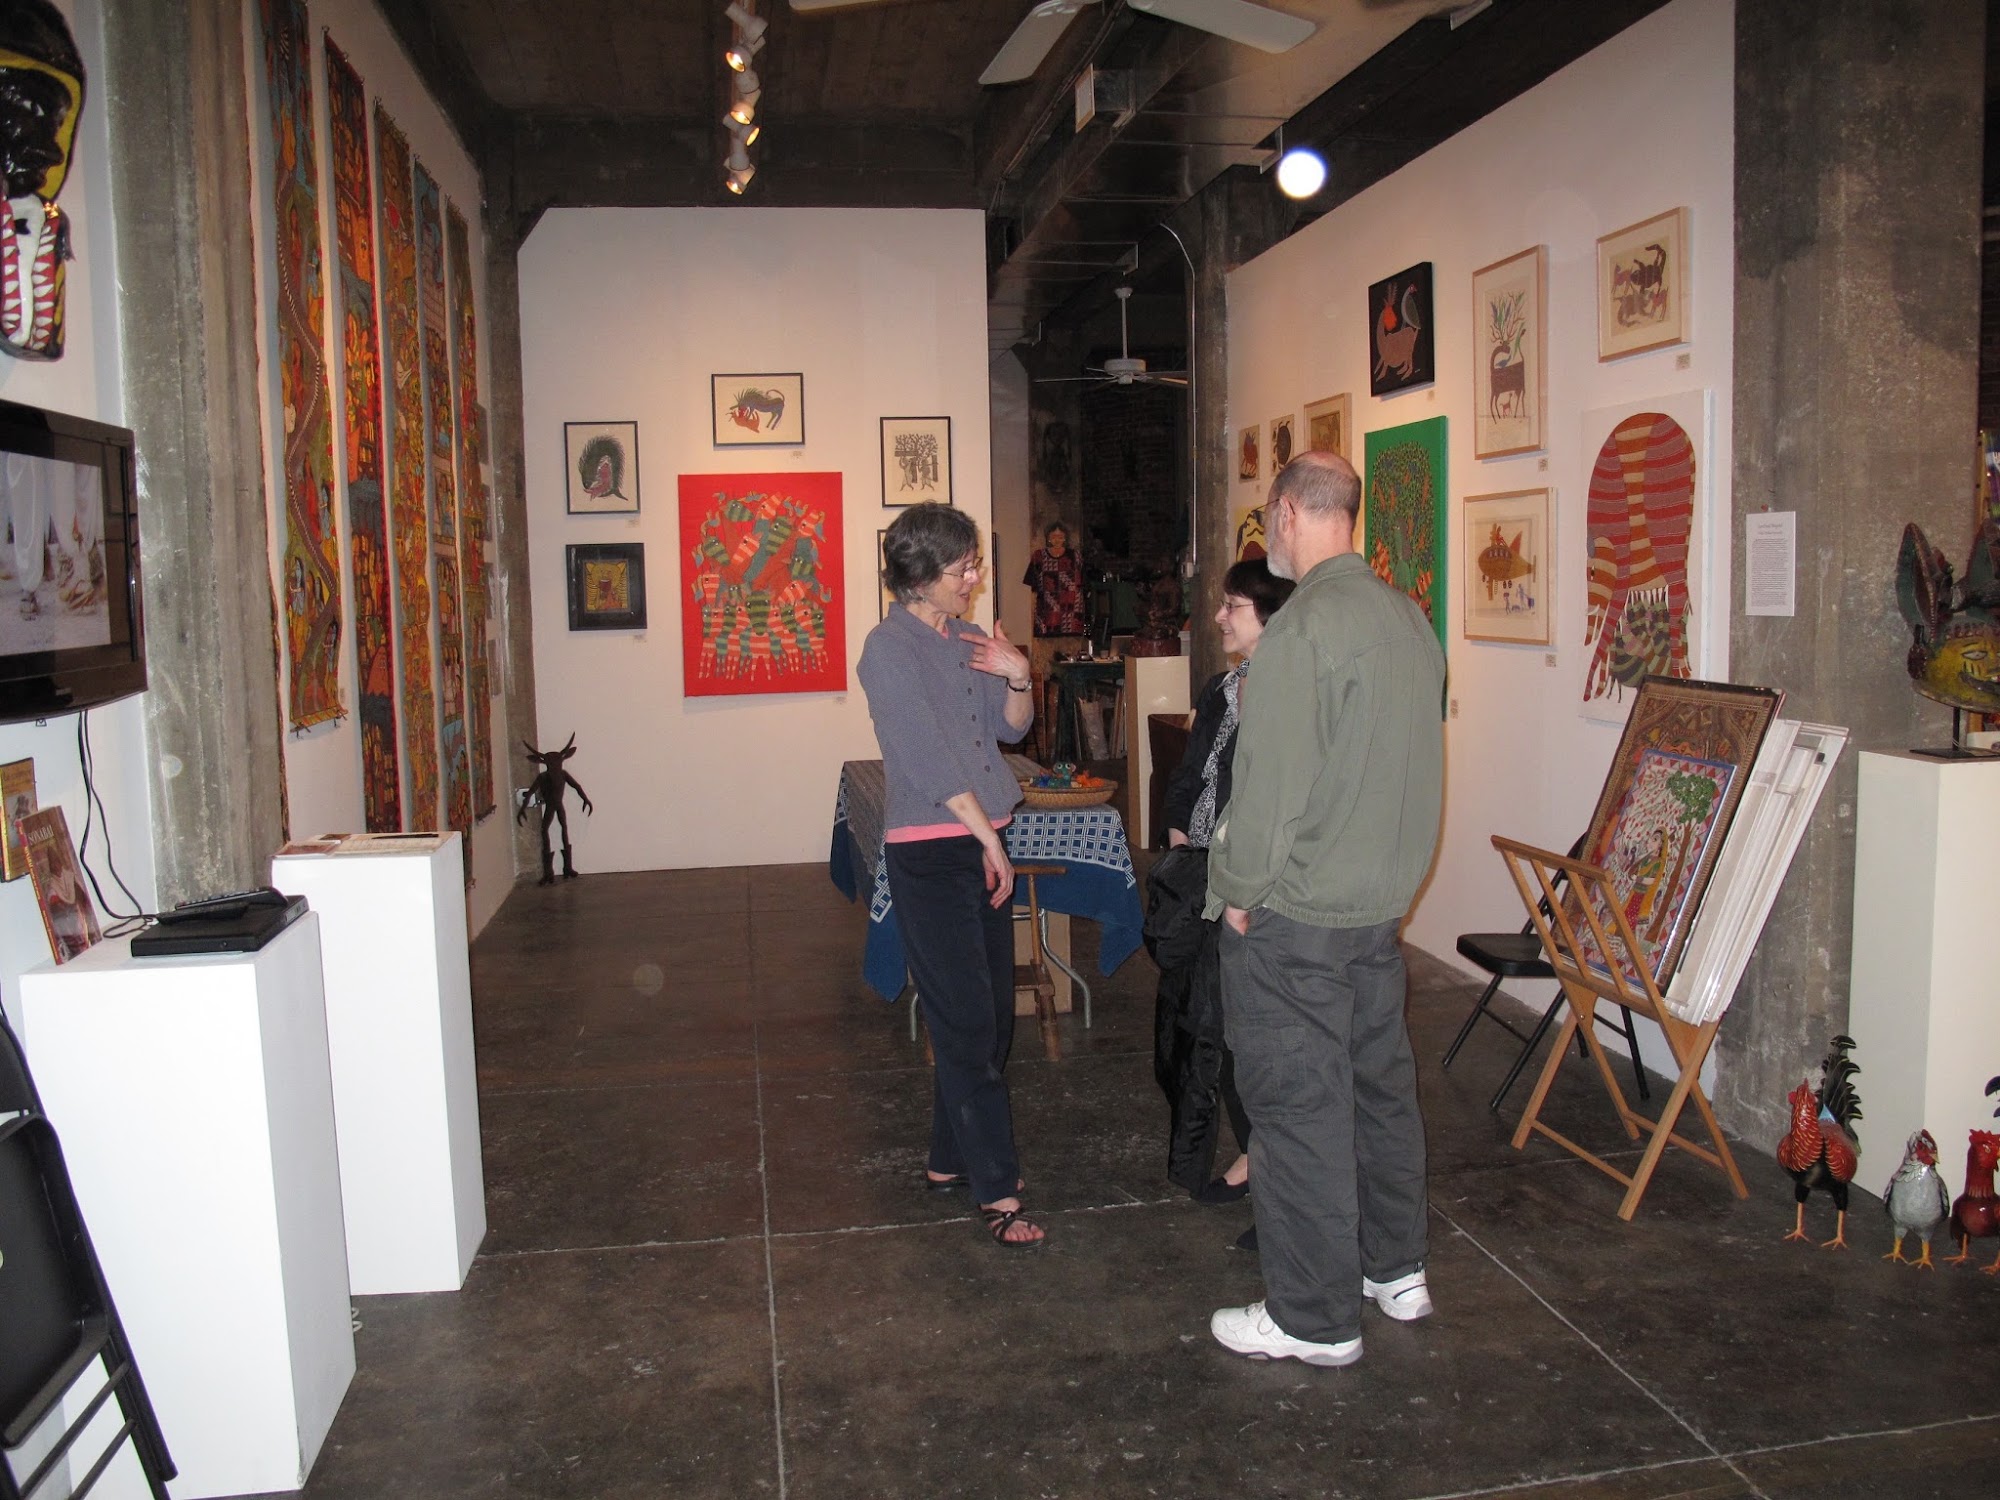 Indigo Arts Gallery